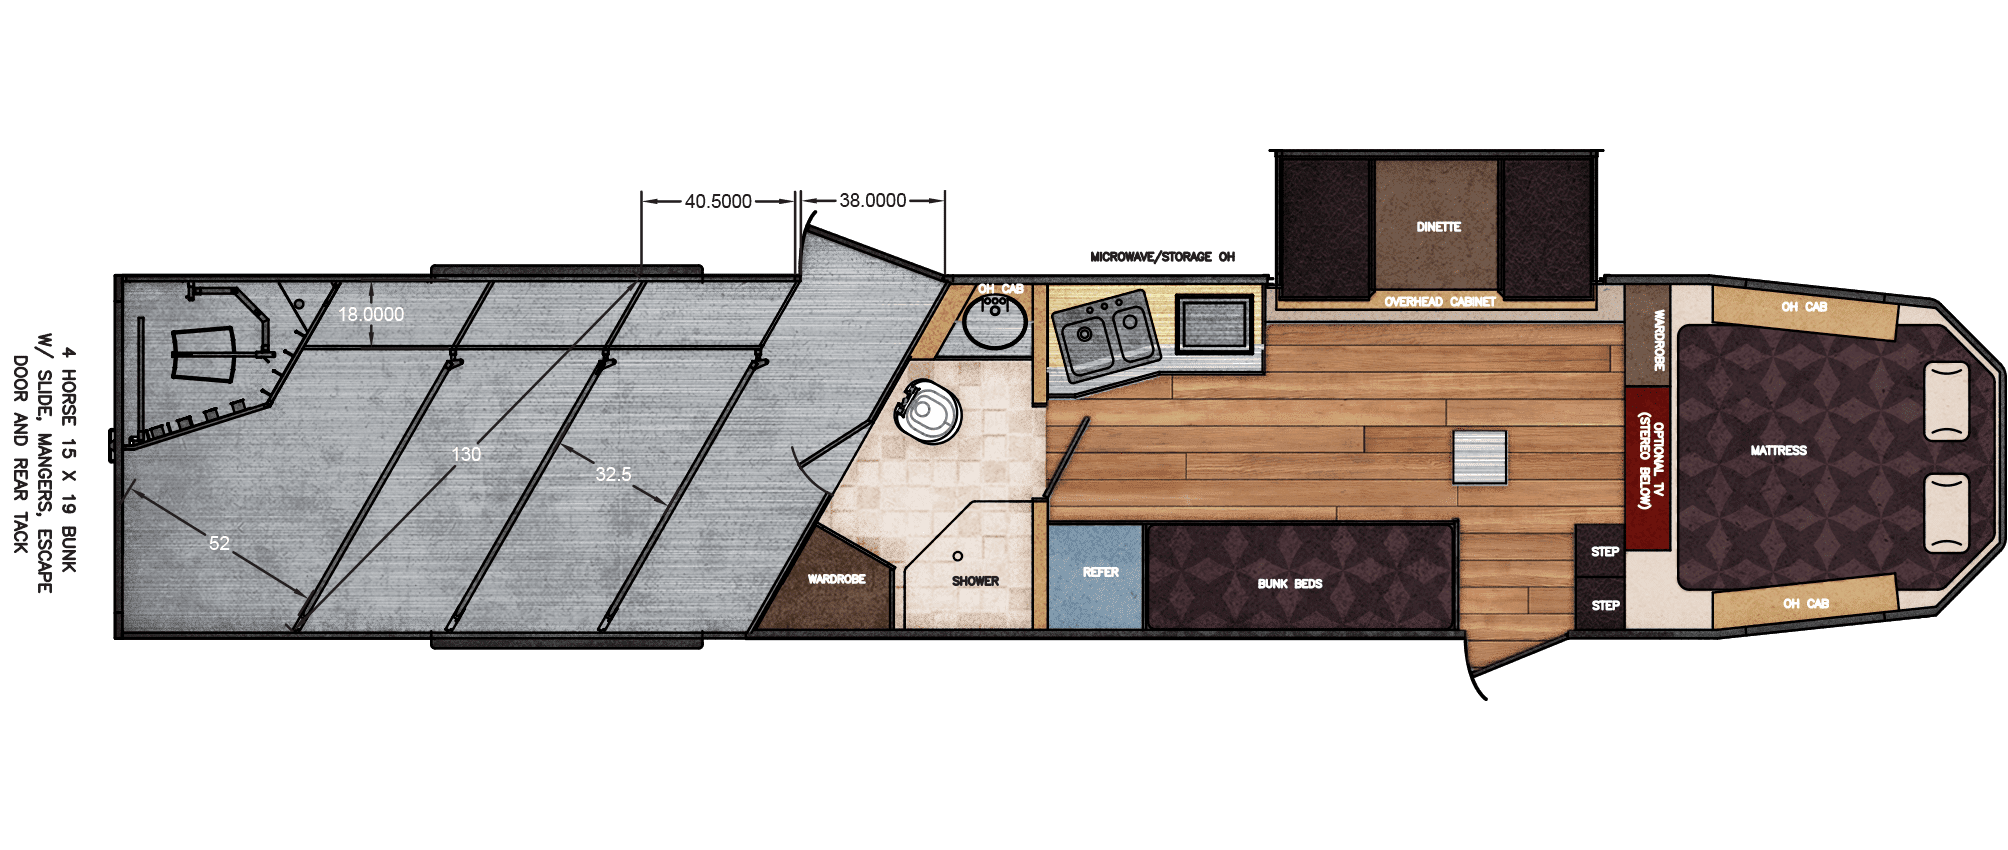 19 Bunk Living Quarters Floor Plan, Trailer Bunk Bed